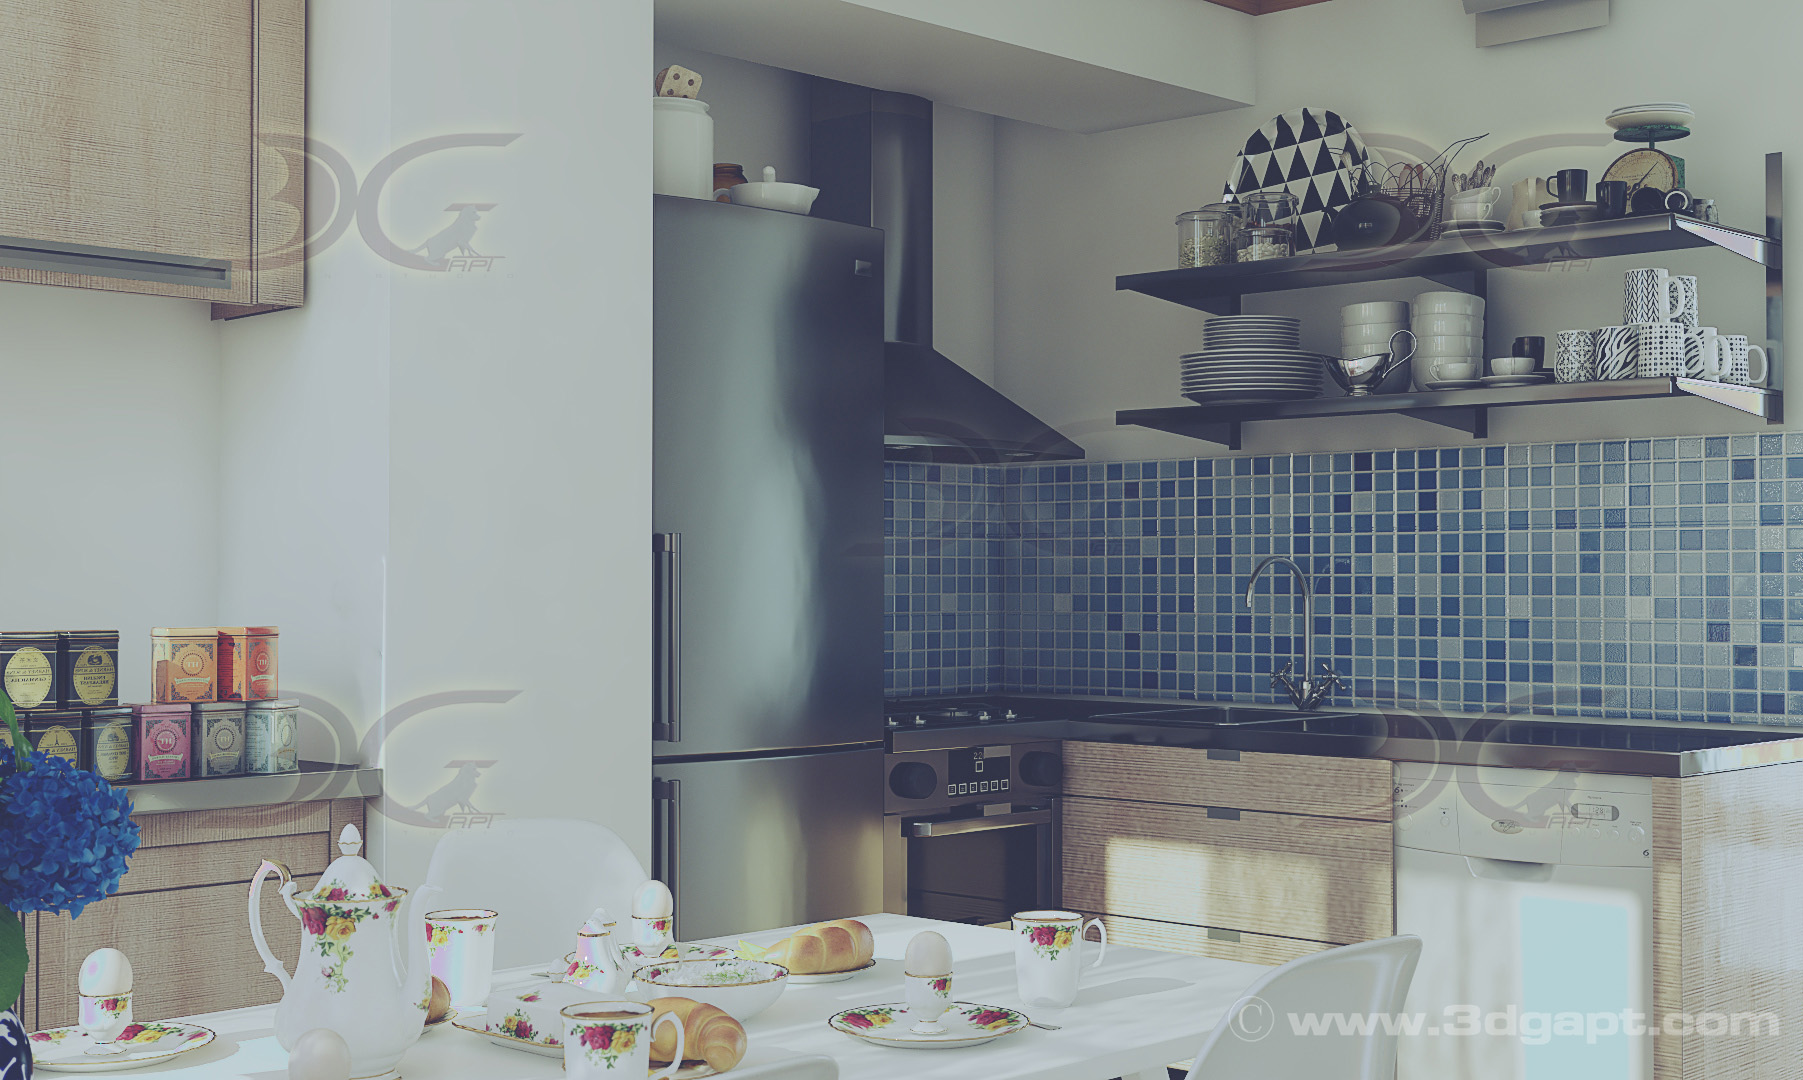 architecture interior kitchen-2versions 015